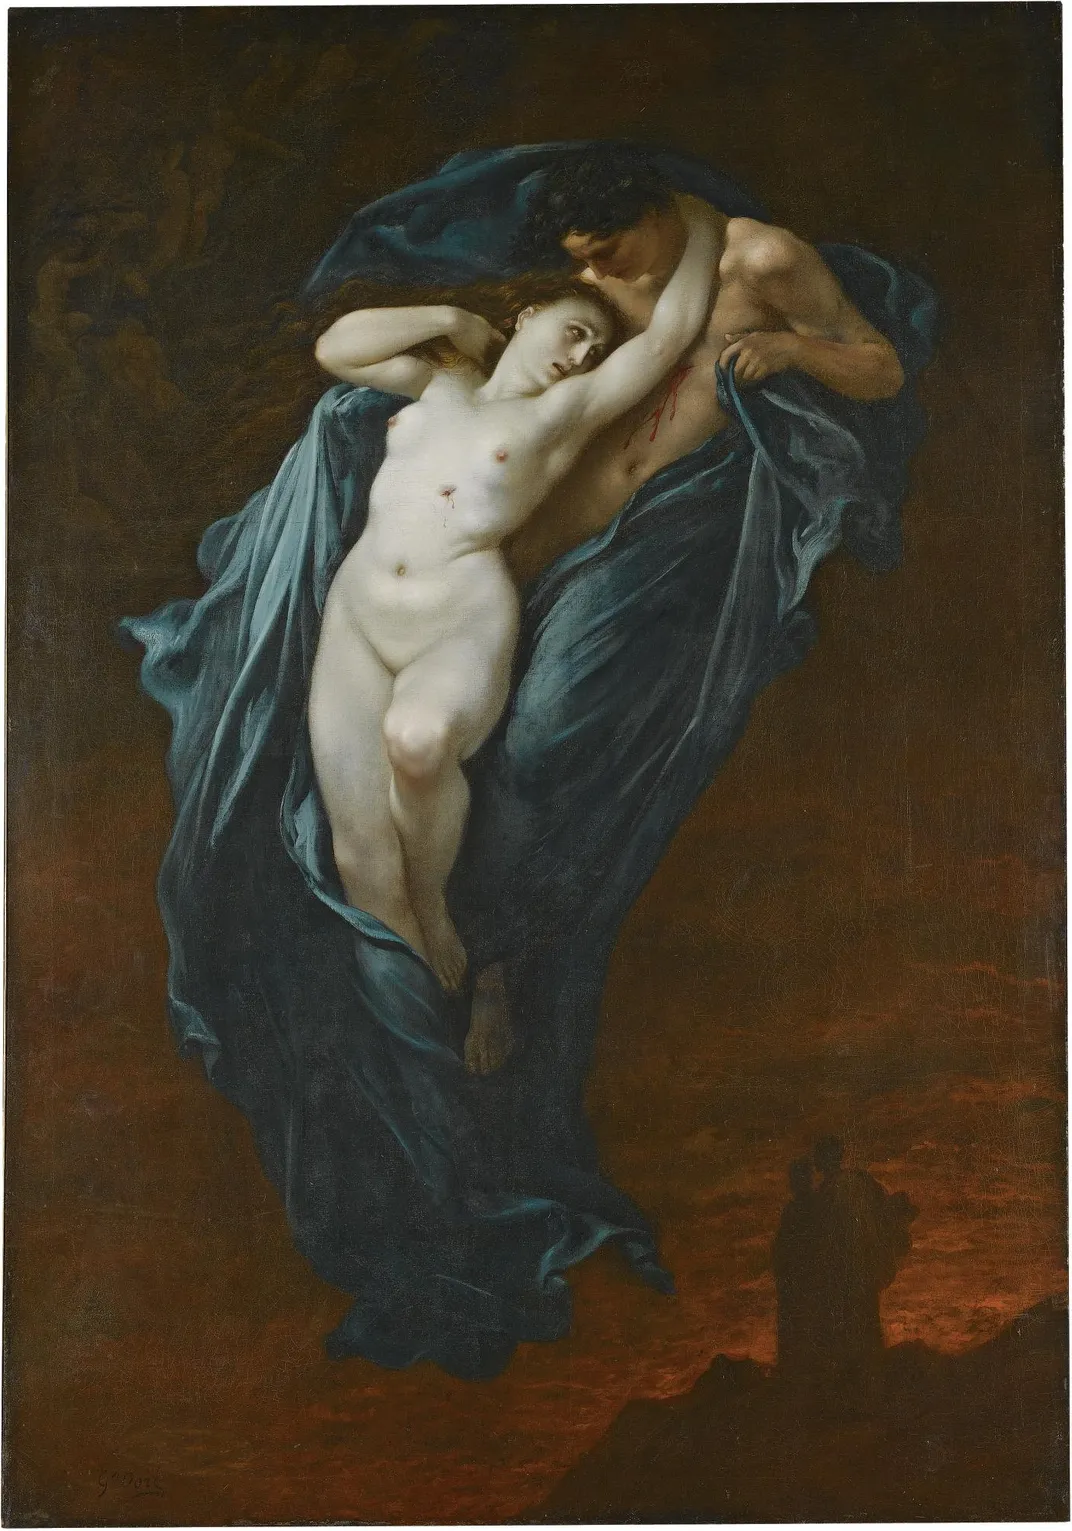 Gustave Doré, Paolo and Francesca da Rimini, 1863